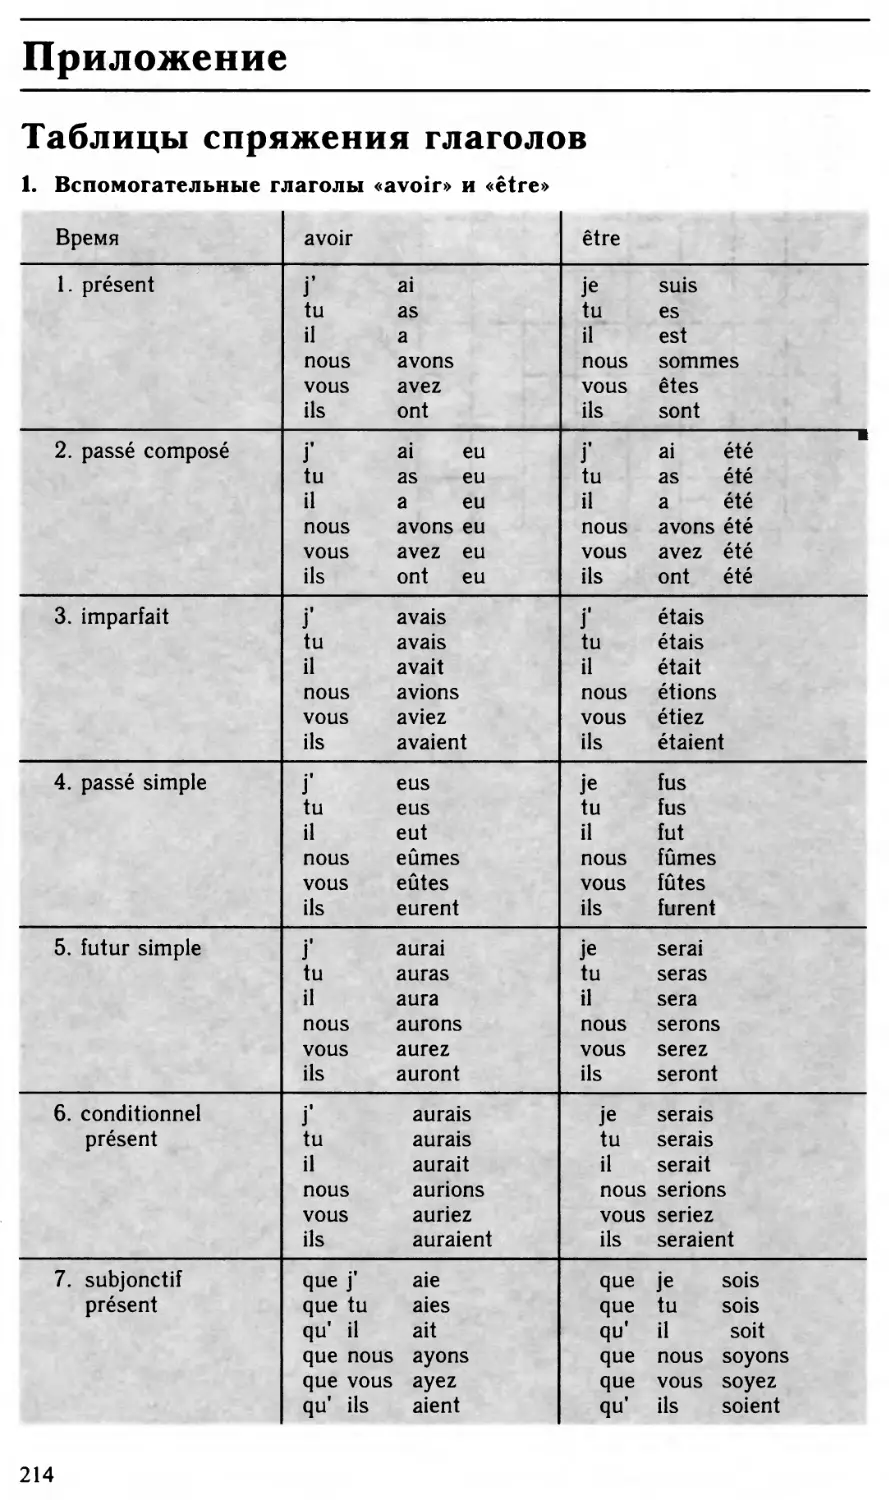 Приложение: Таблицы спряжения глаголов